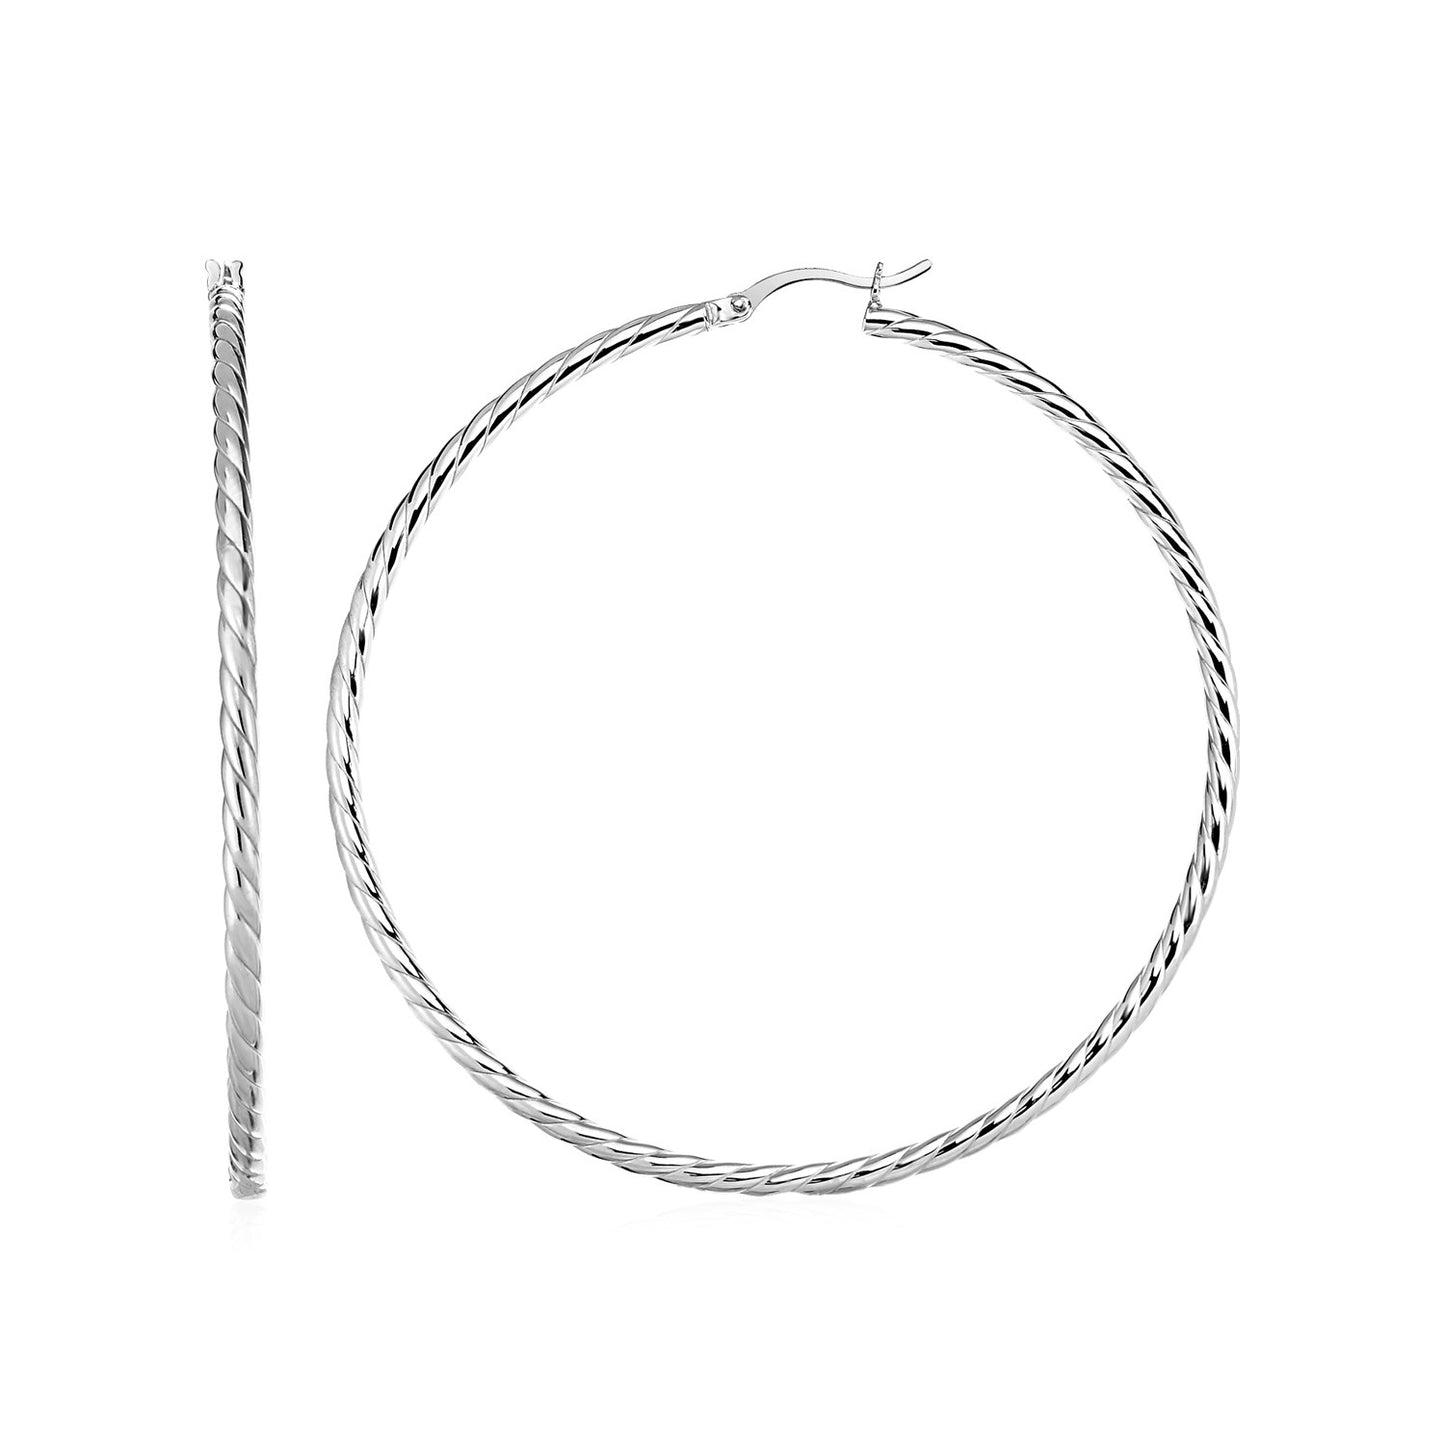 Hoop Earrings with Twist Texture in Sterling Silver